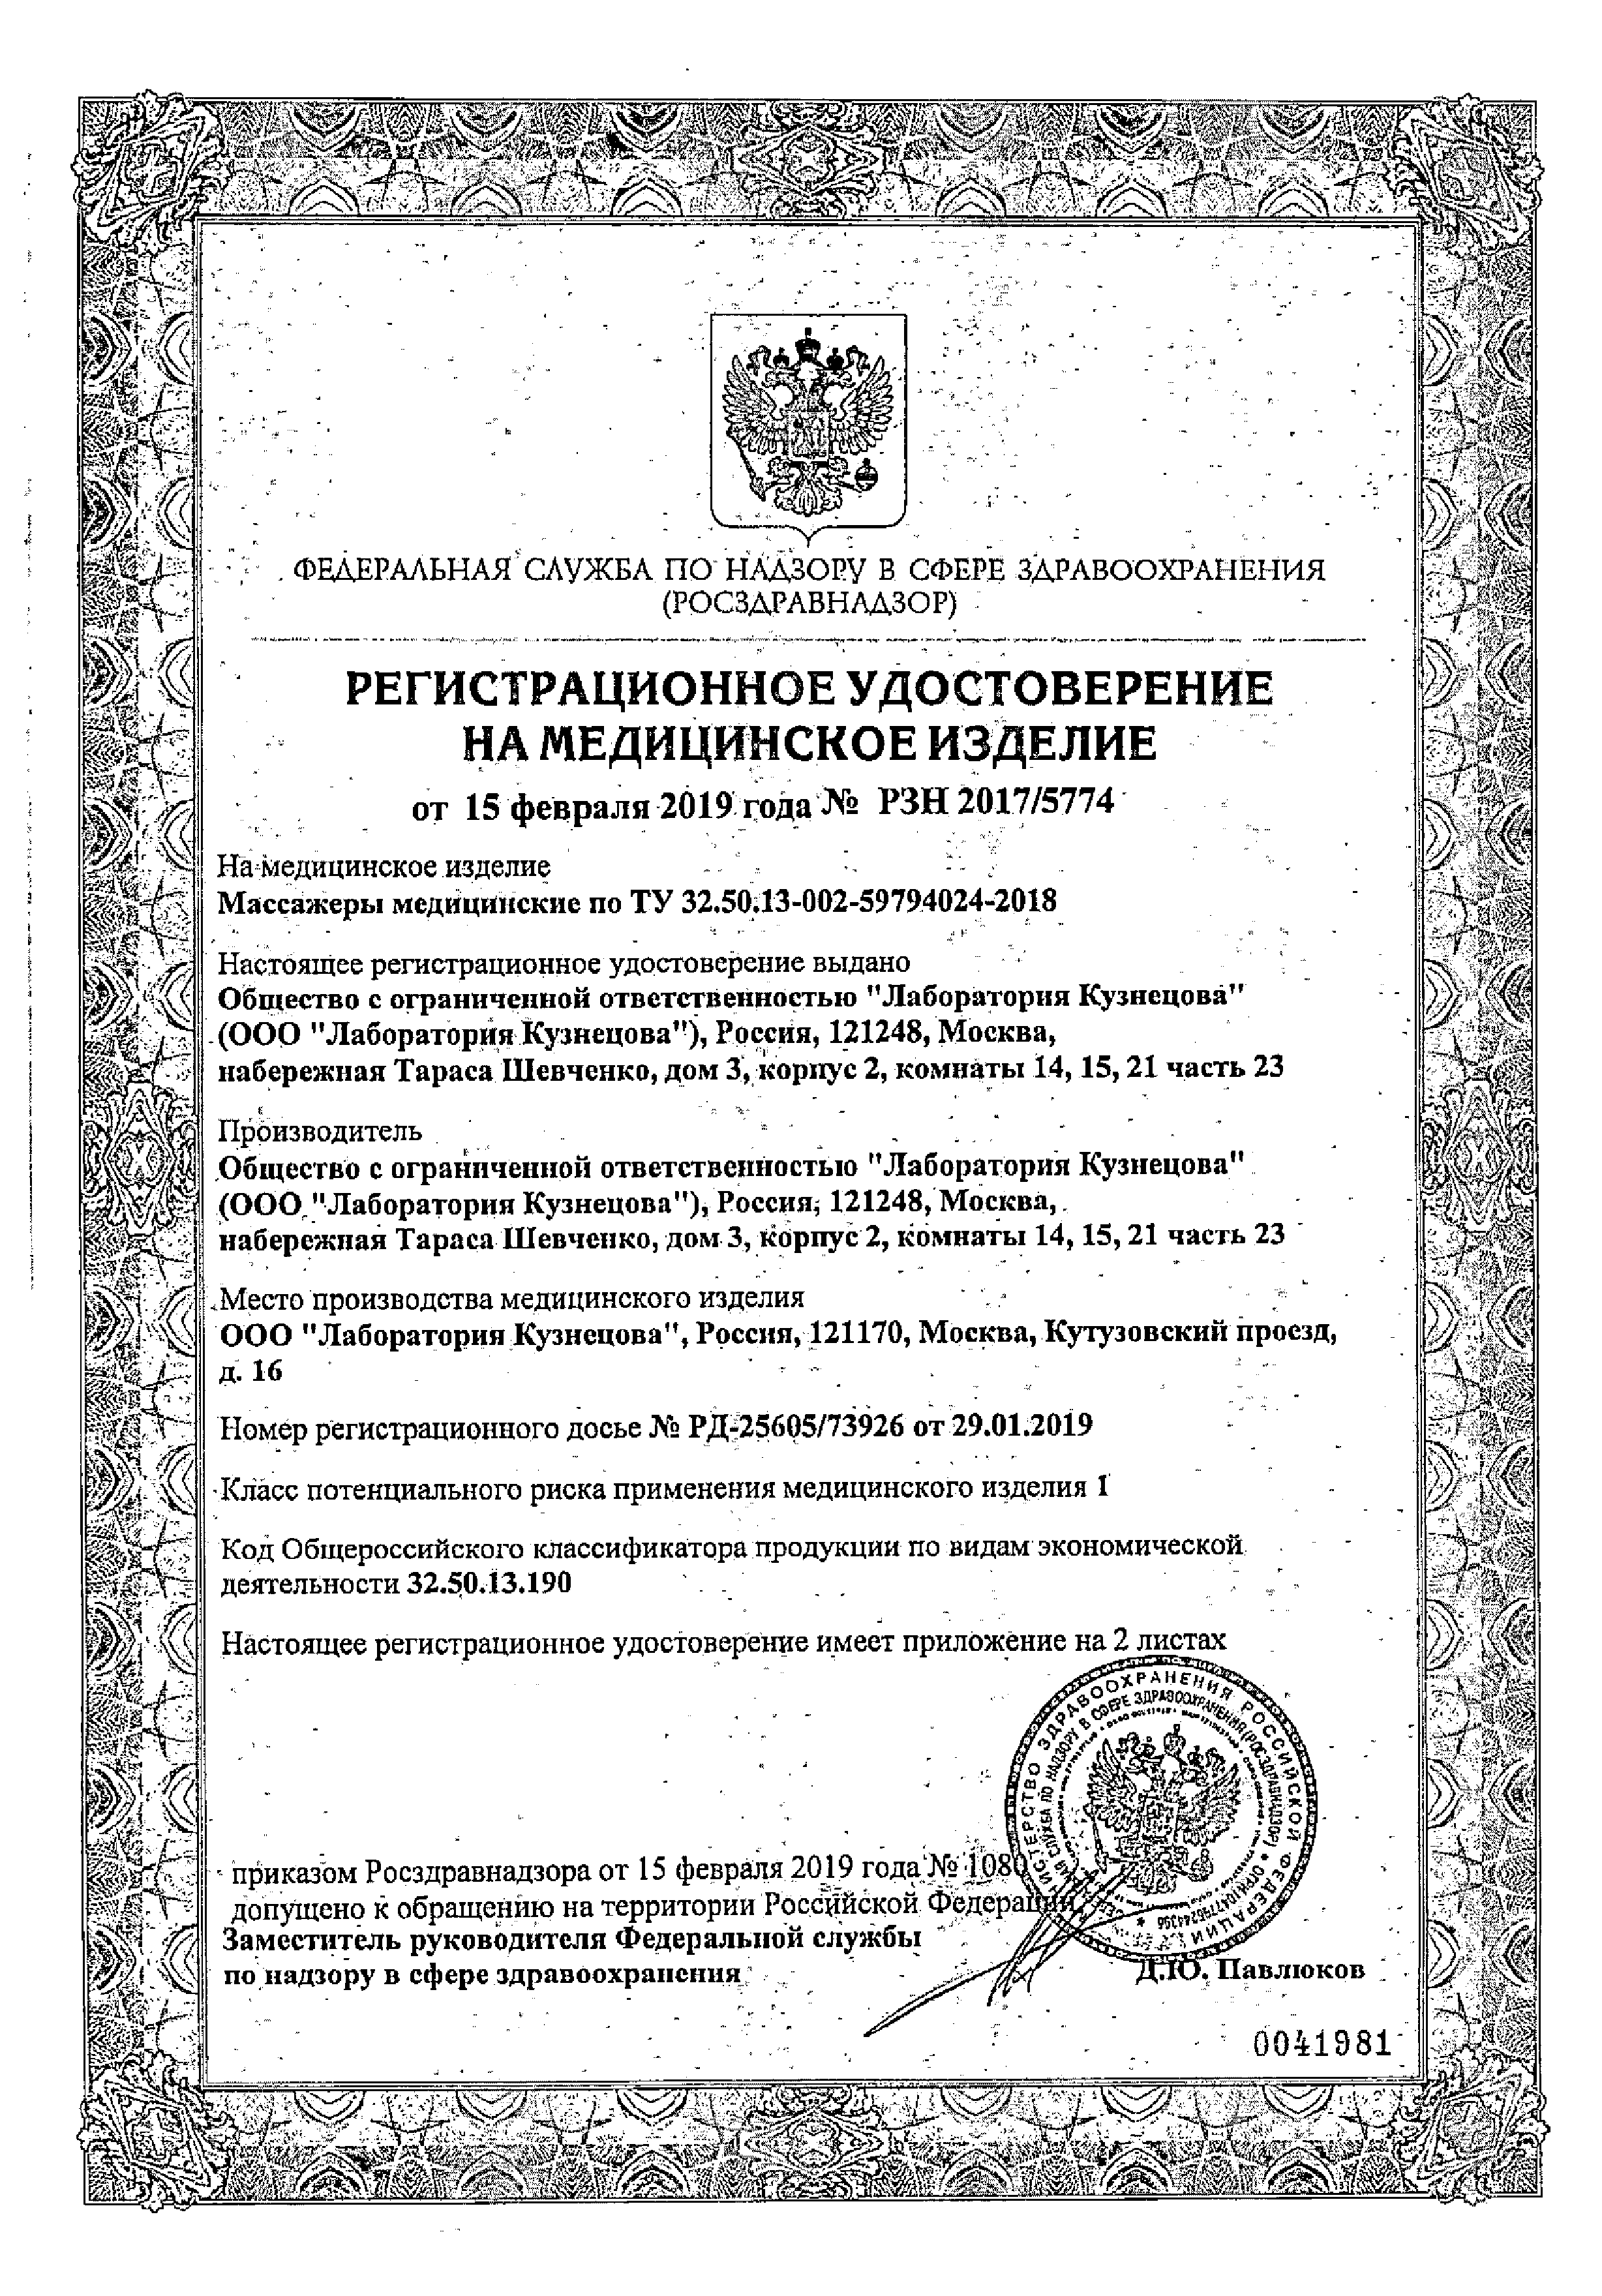 Иппликатор Кузнецова Тибетский на мягкой подложке для поясницы сертификат